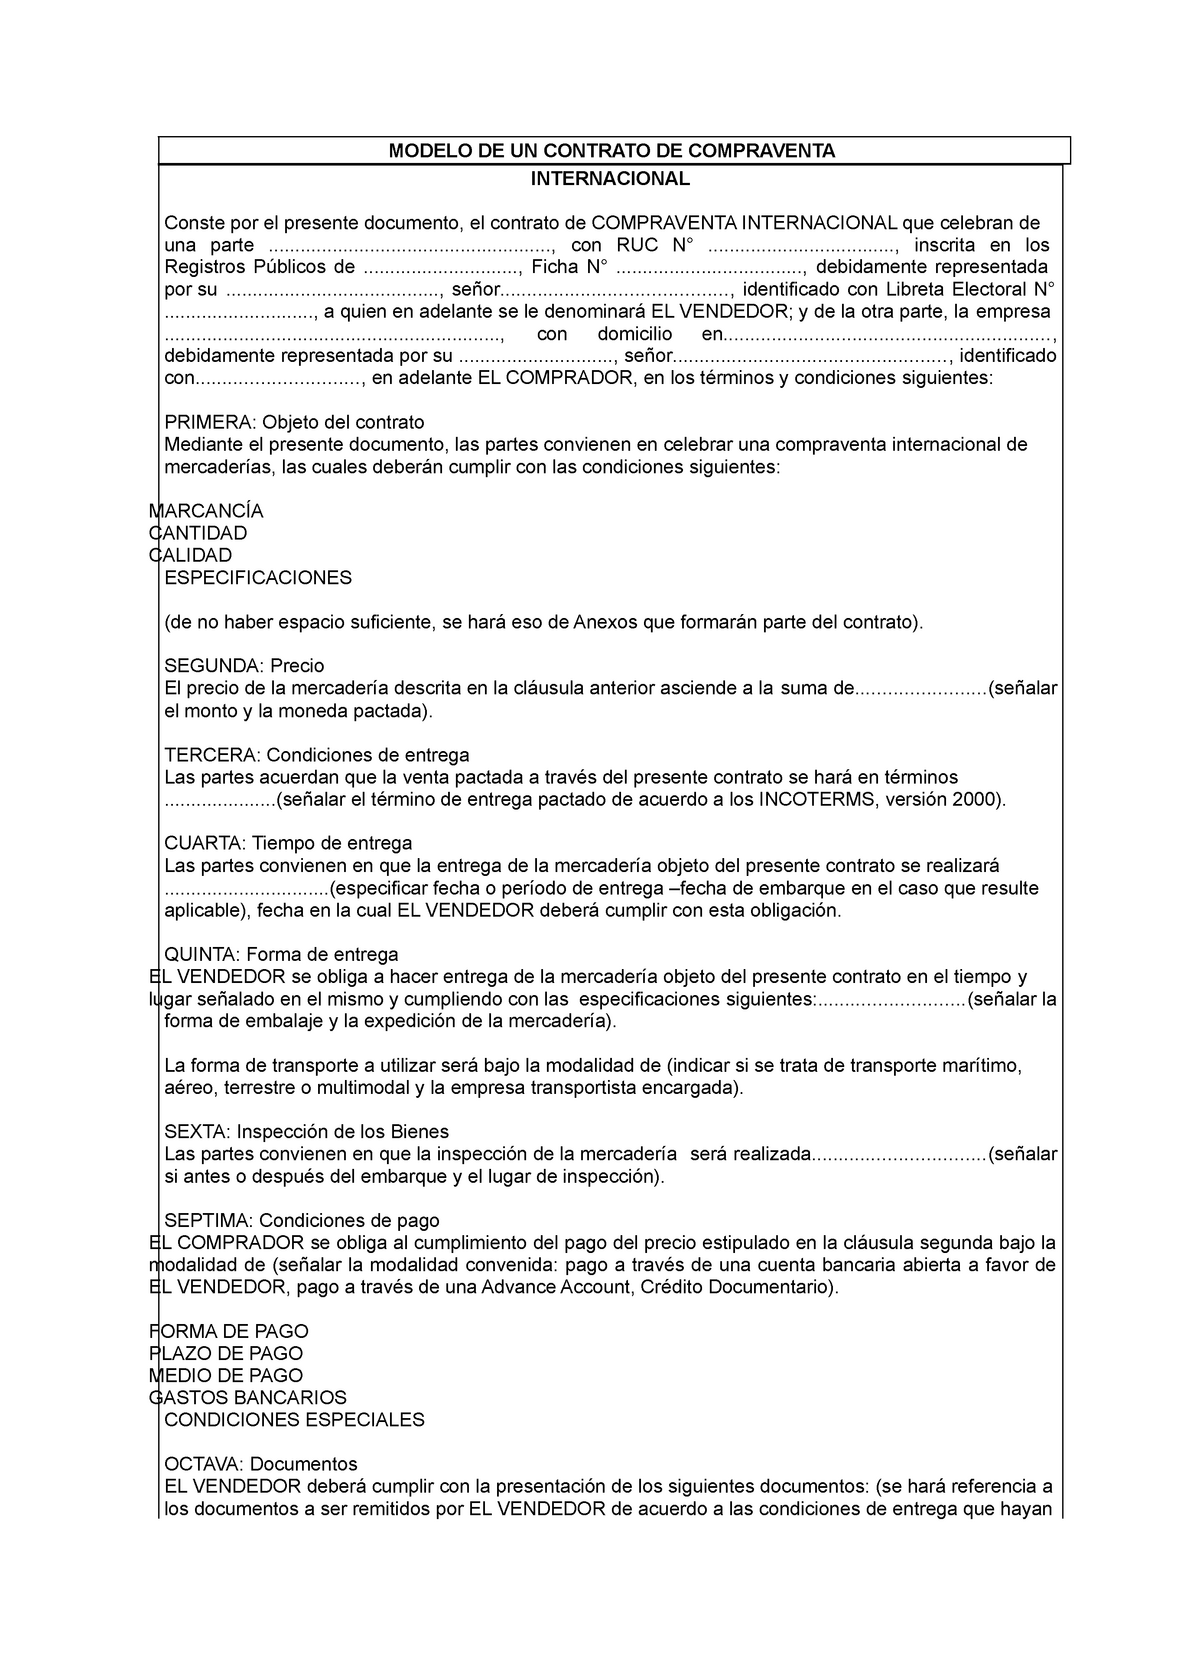 Modelo de contrato-resumen y formato - MODELO DE UN CONTRATO DE COMPRAVENTA  INTERNACIONAL Conste por - Studocu